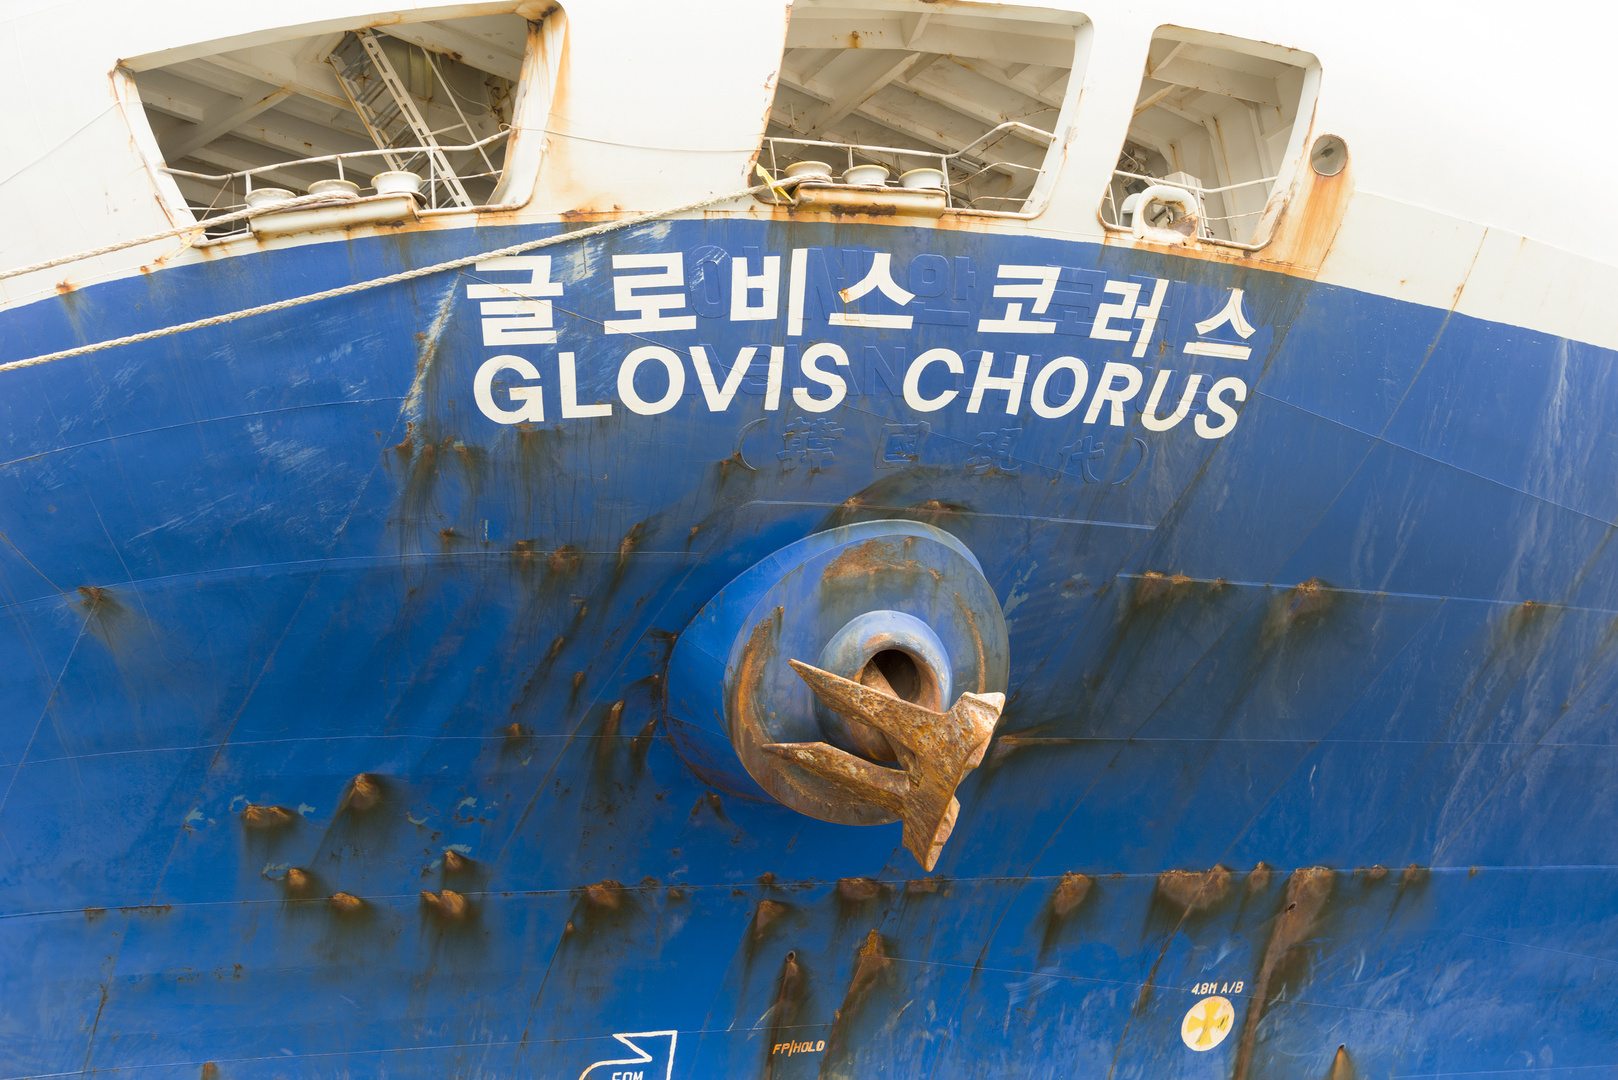 Vertrauen in die Glovis Chorus